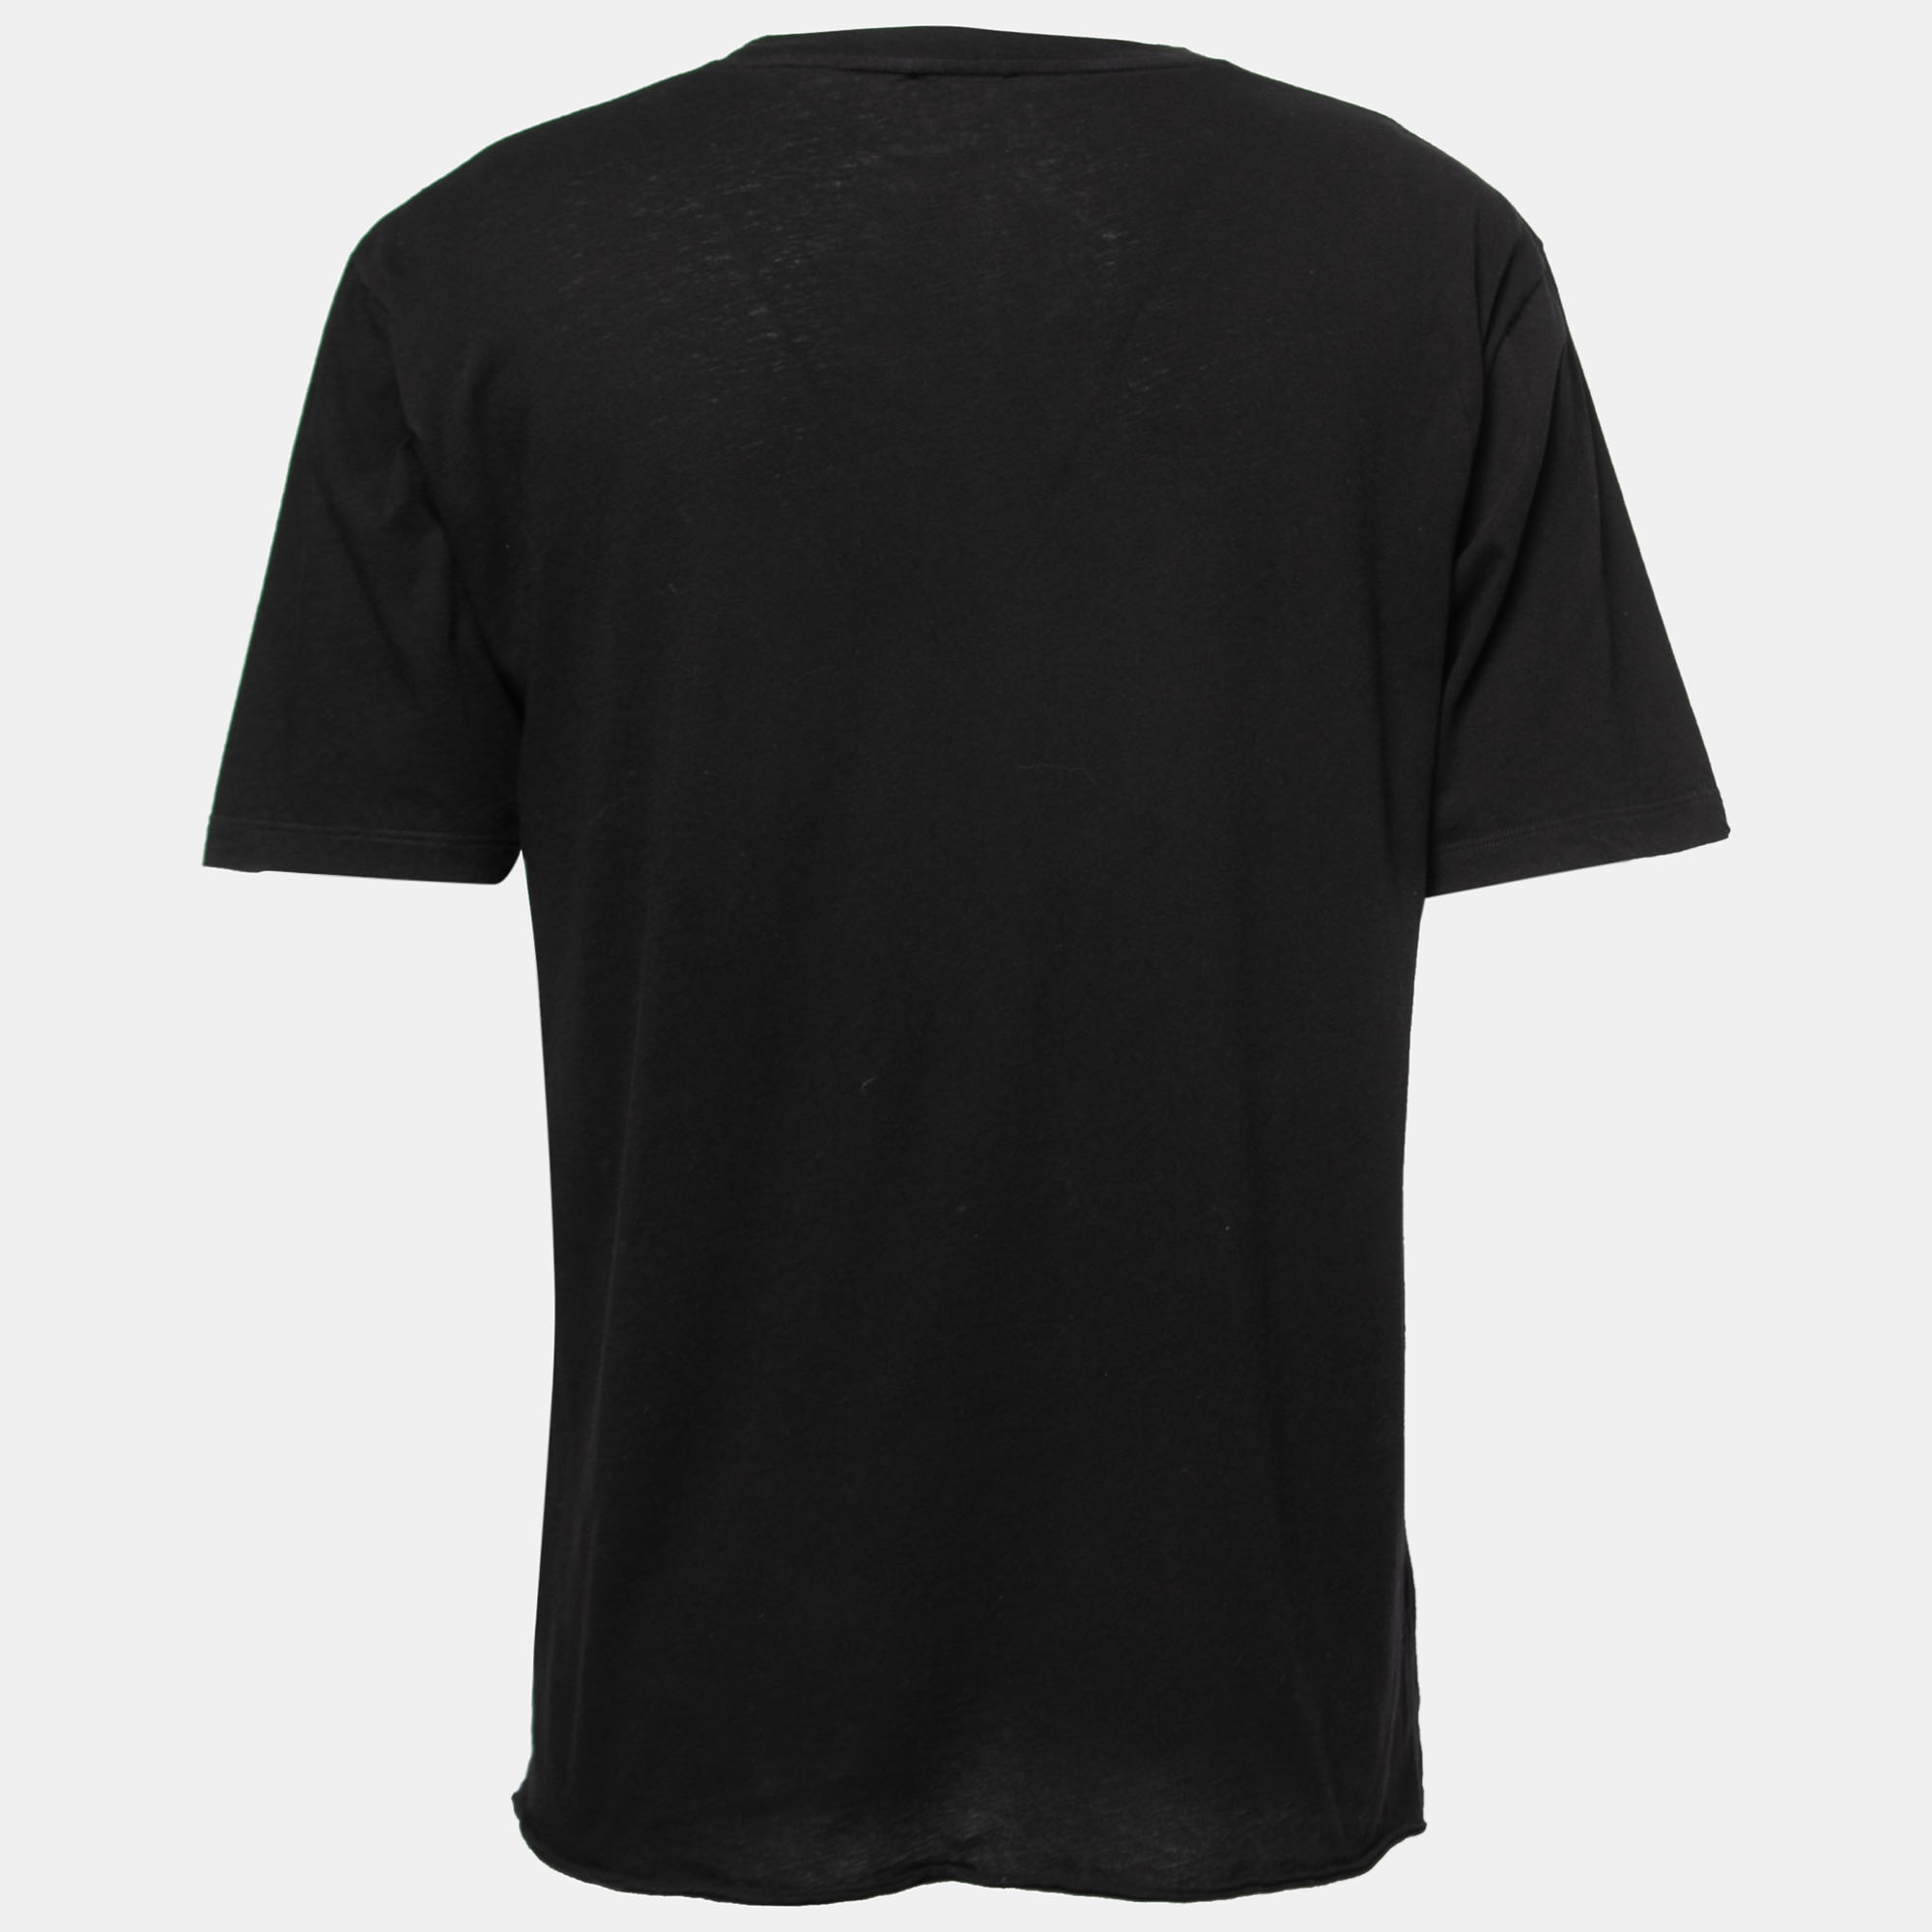 

Saint Laurent Paris Black Signature Print Cotton Crew Neck T-Shirt